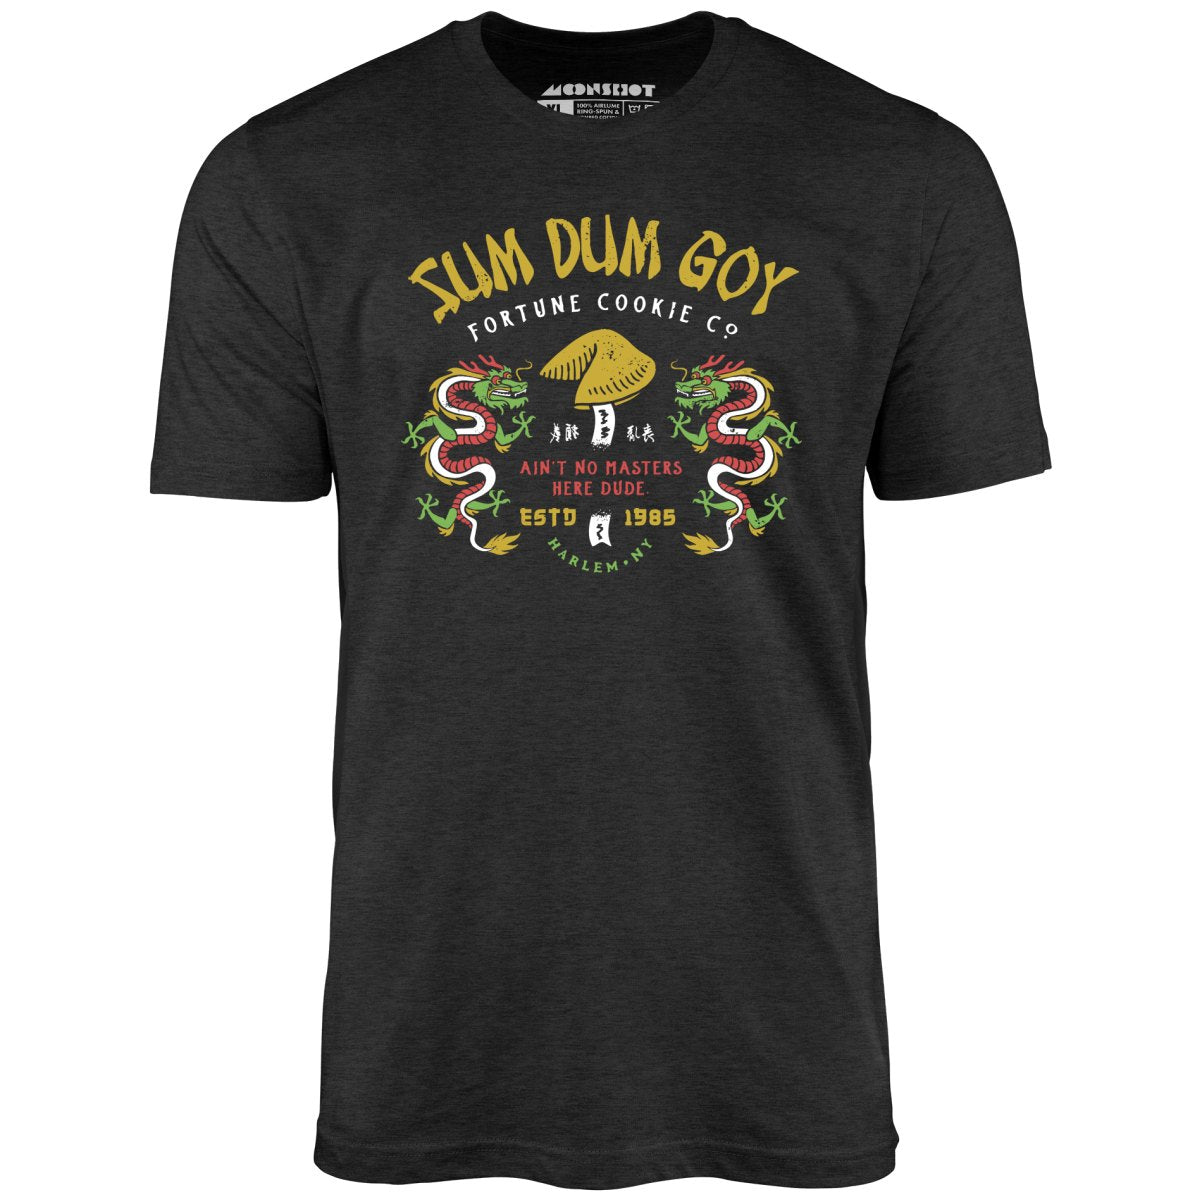 Sum Dum Goy Fortune Cookie Co. - Last Dragon - Unisex T-Shirt